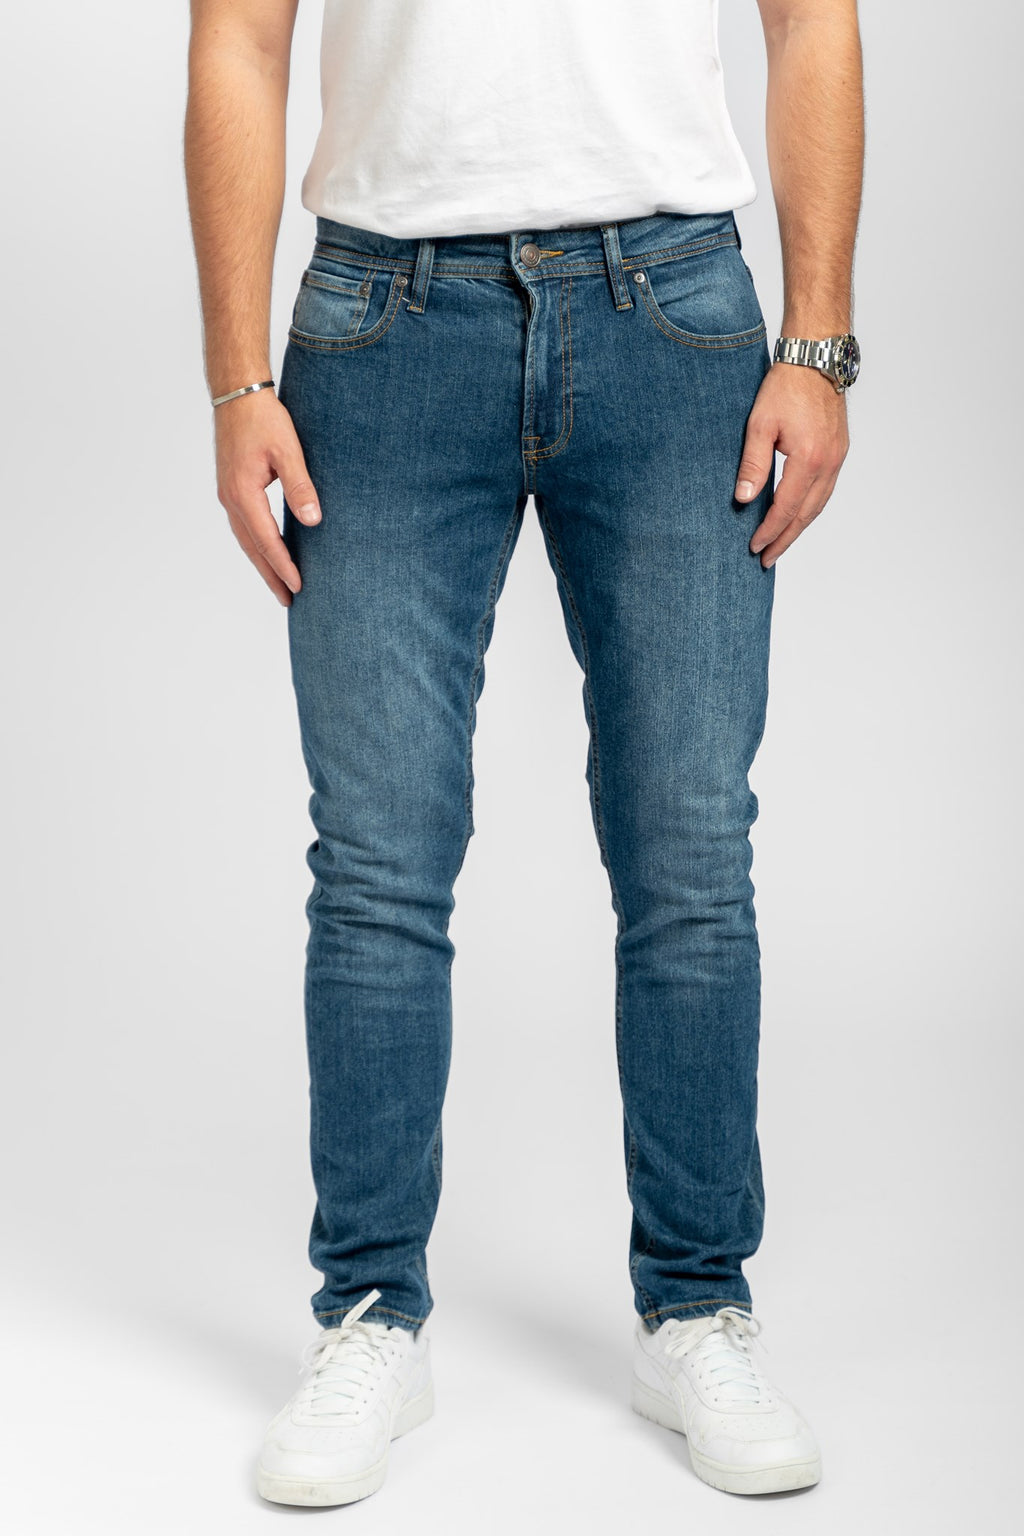 De Originale Performance Jeans (Slim) - Medium Blue Denim